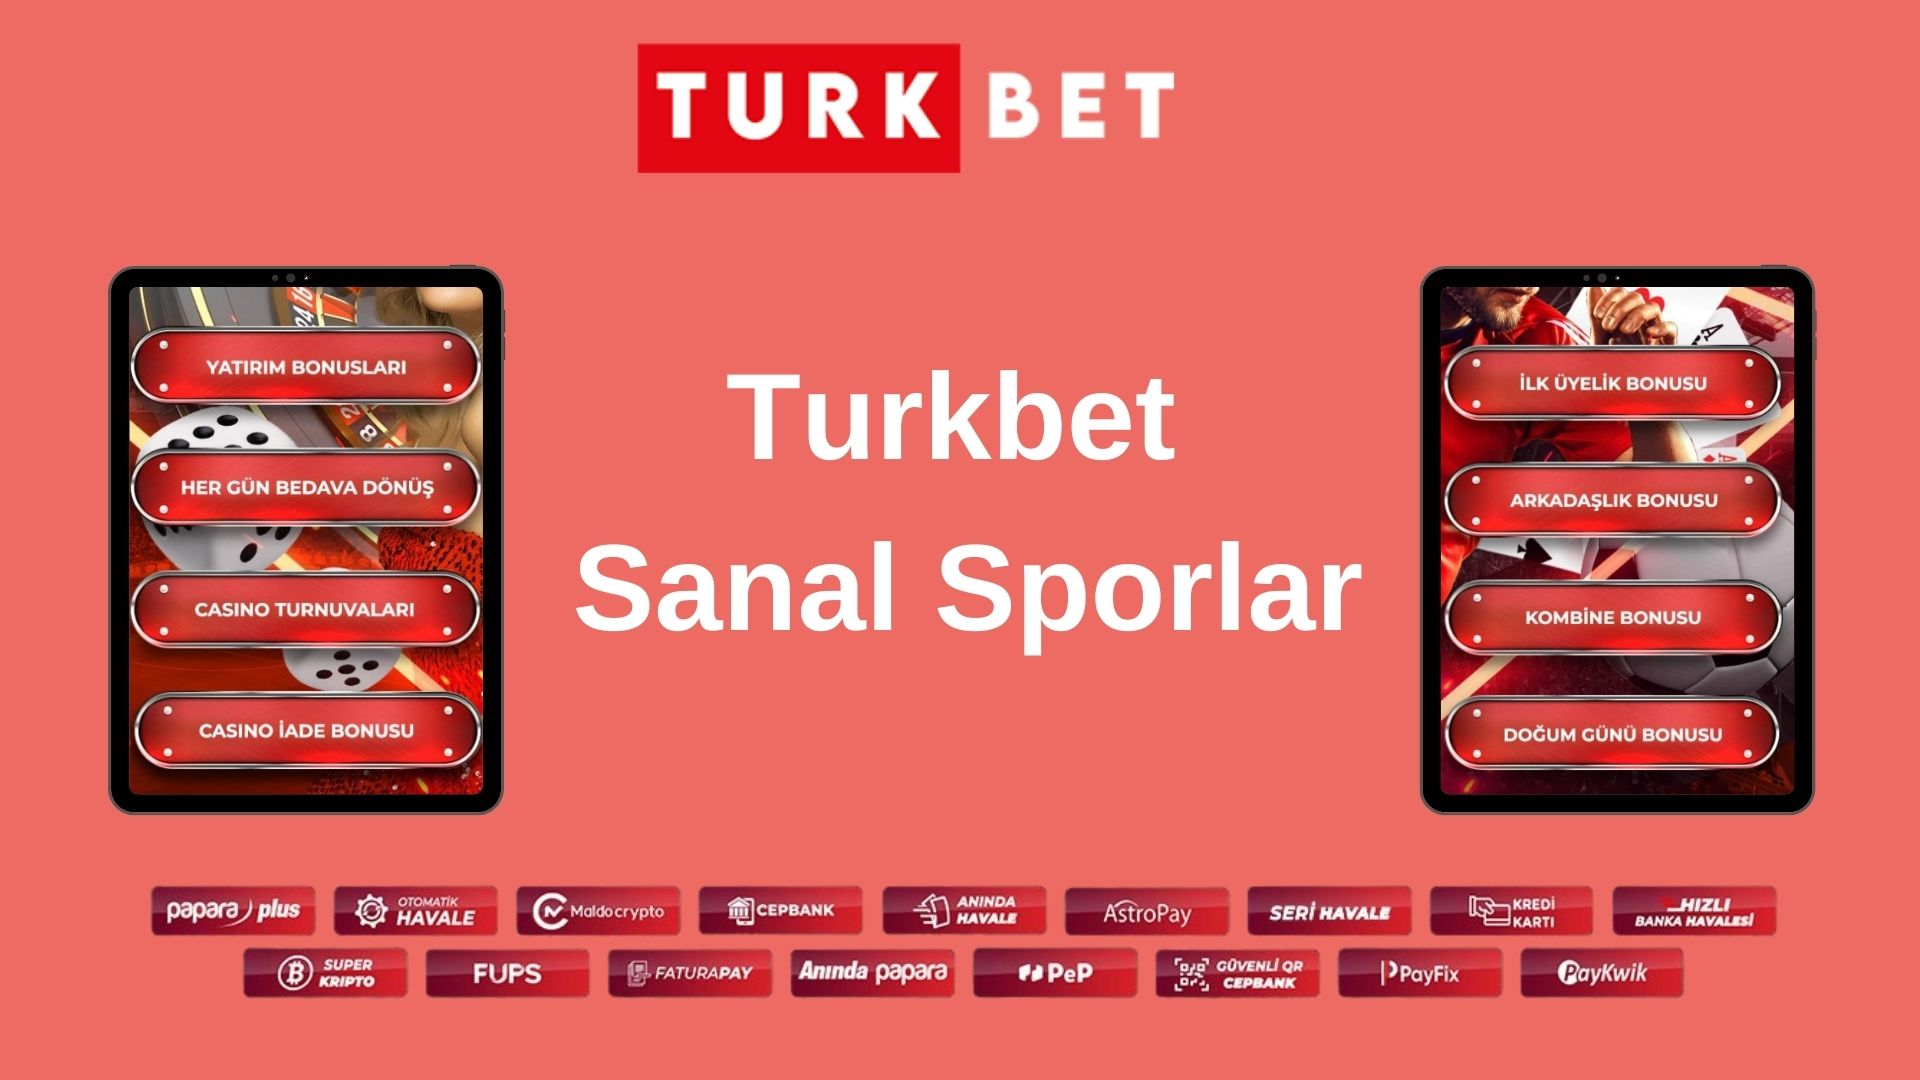 Turkbet Sanal Sporlar